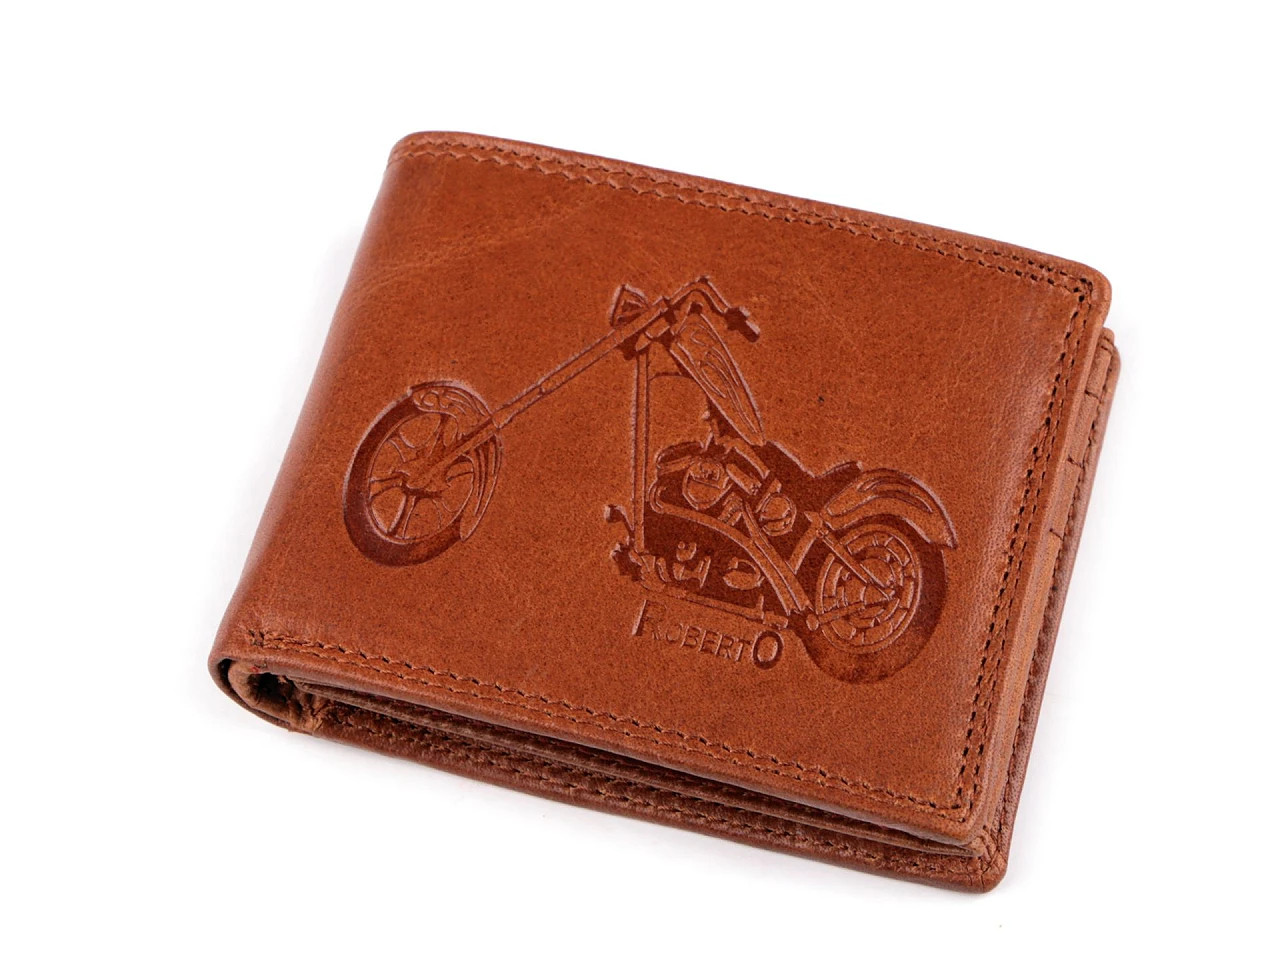 Pánská peněženka kožená pro myslivce, rybáře, motorkáře 9,5x12 cm, barva 23 hnědá koňak motorka